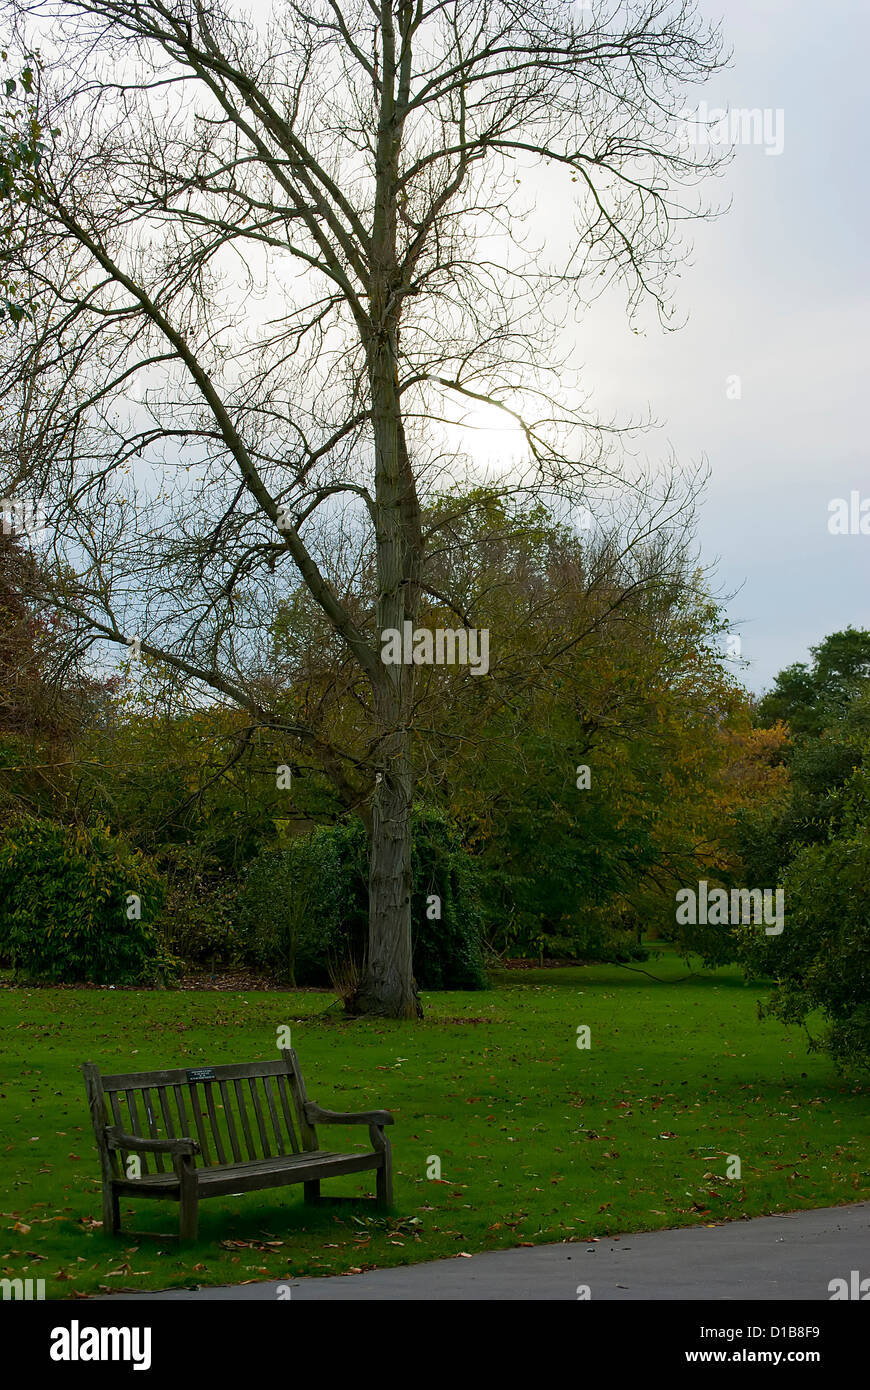 Autumn season at Kew Gardens, London Stock Photo